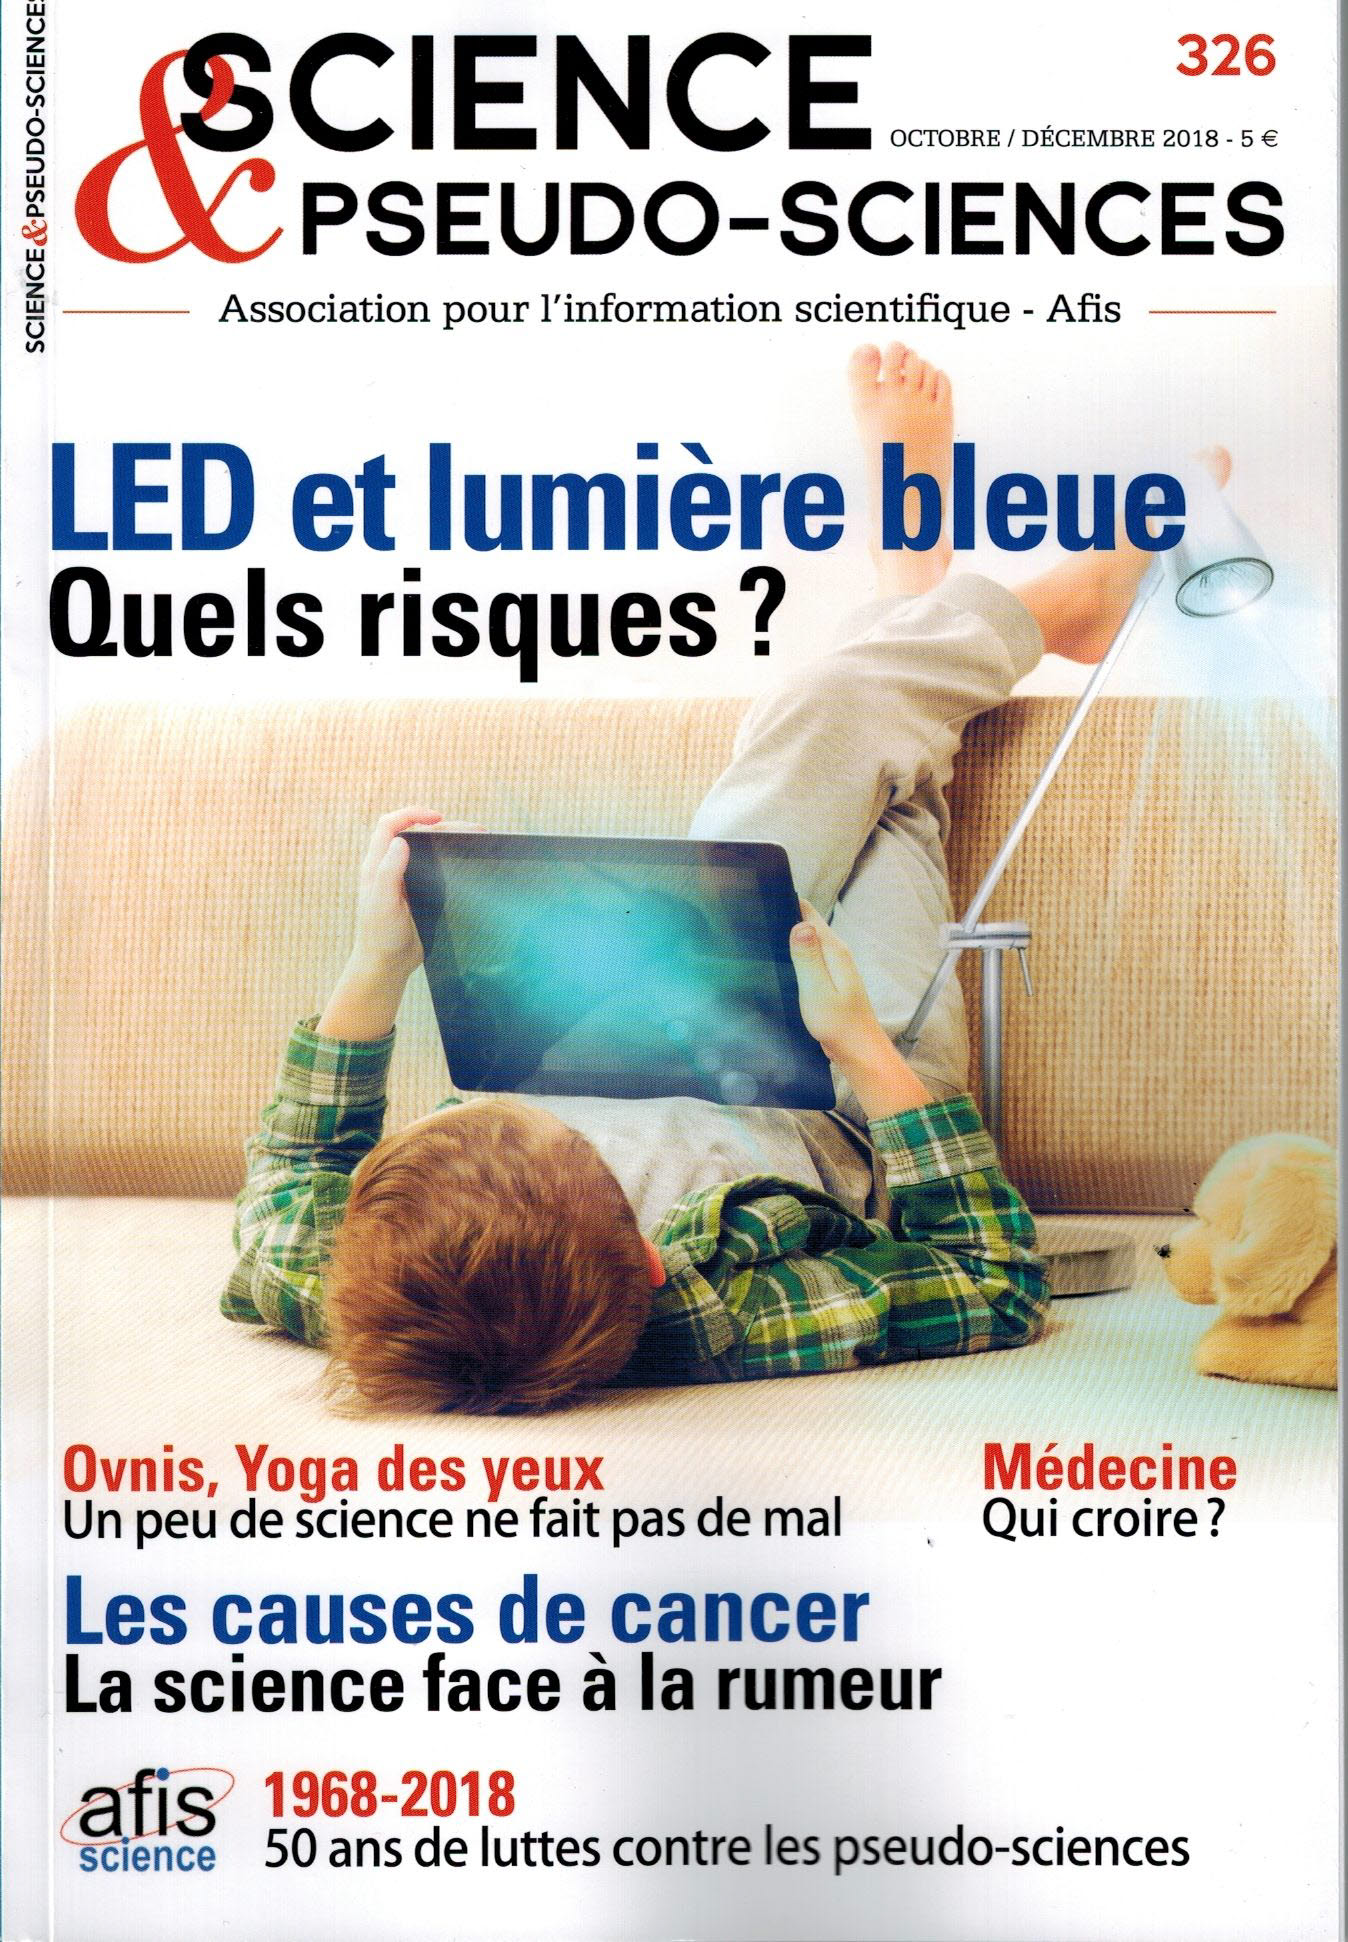 image 326 - LED et lumière bleue - Quels risques ?